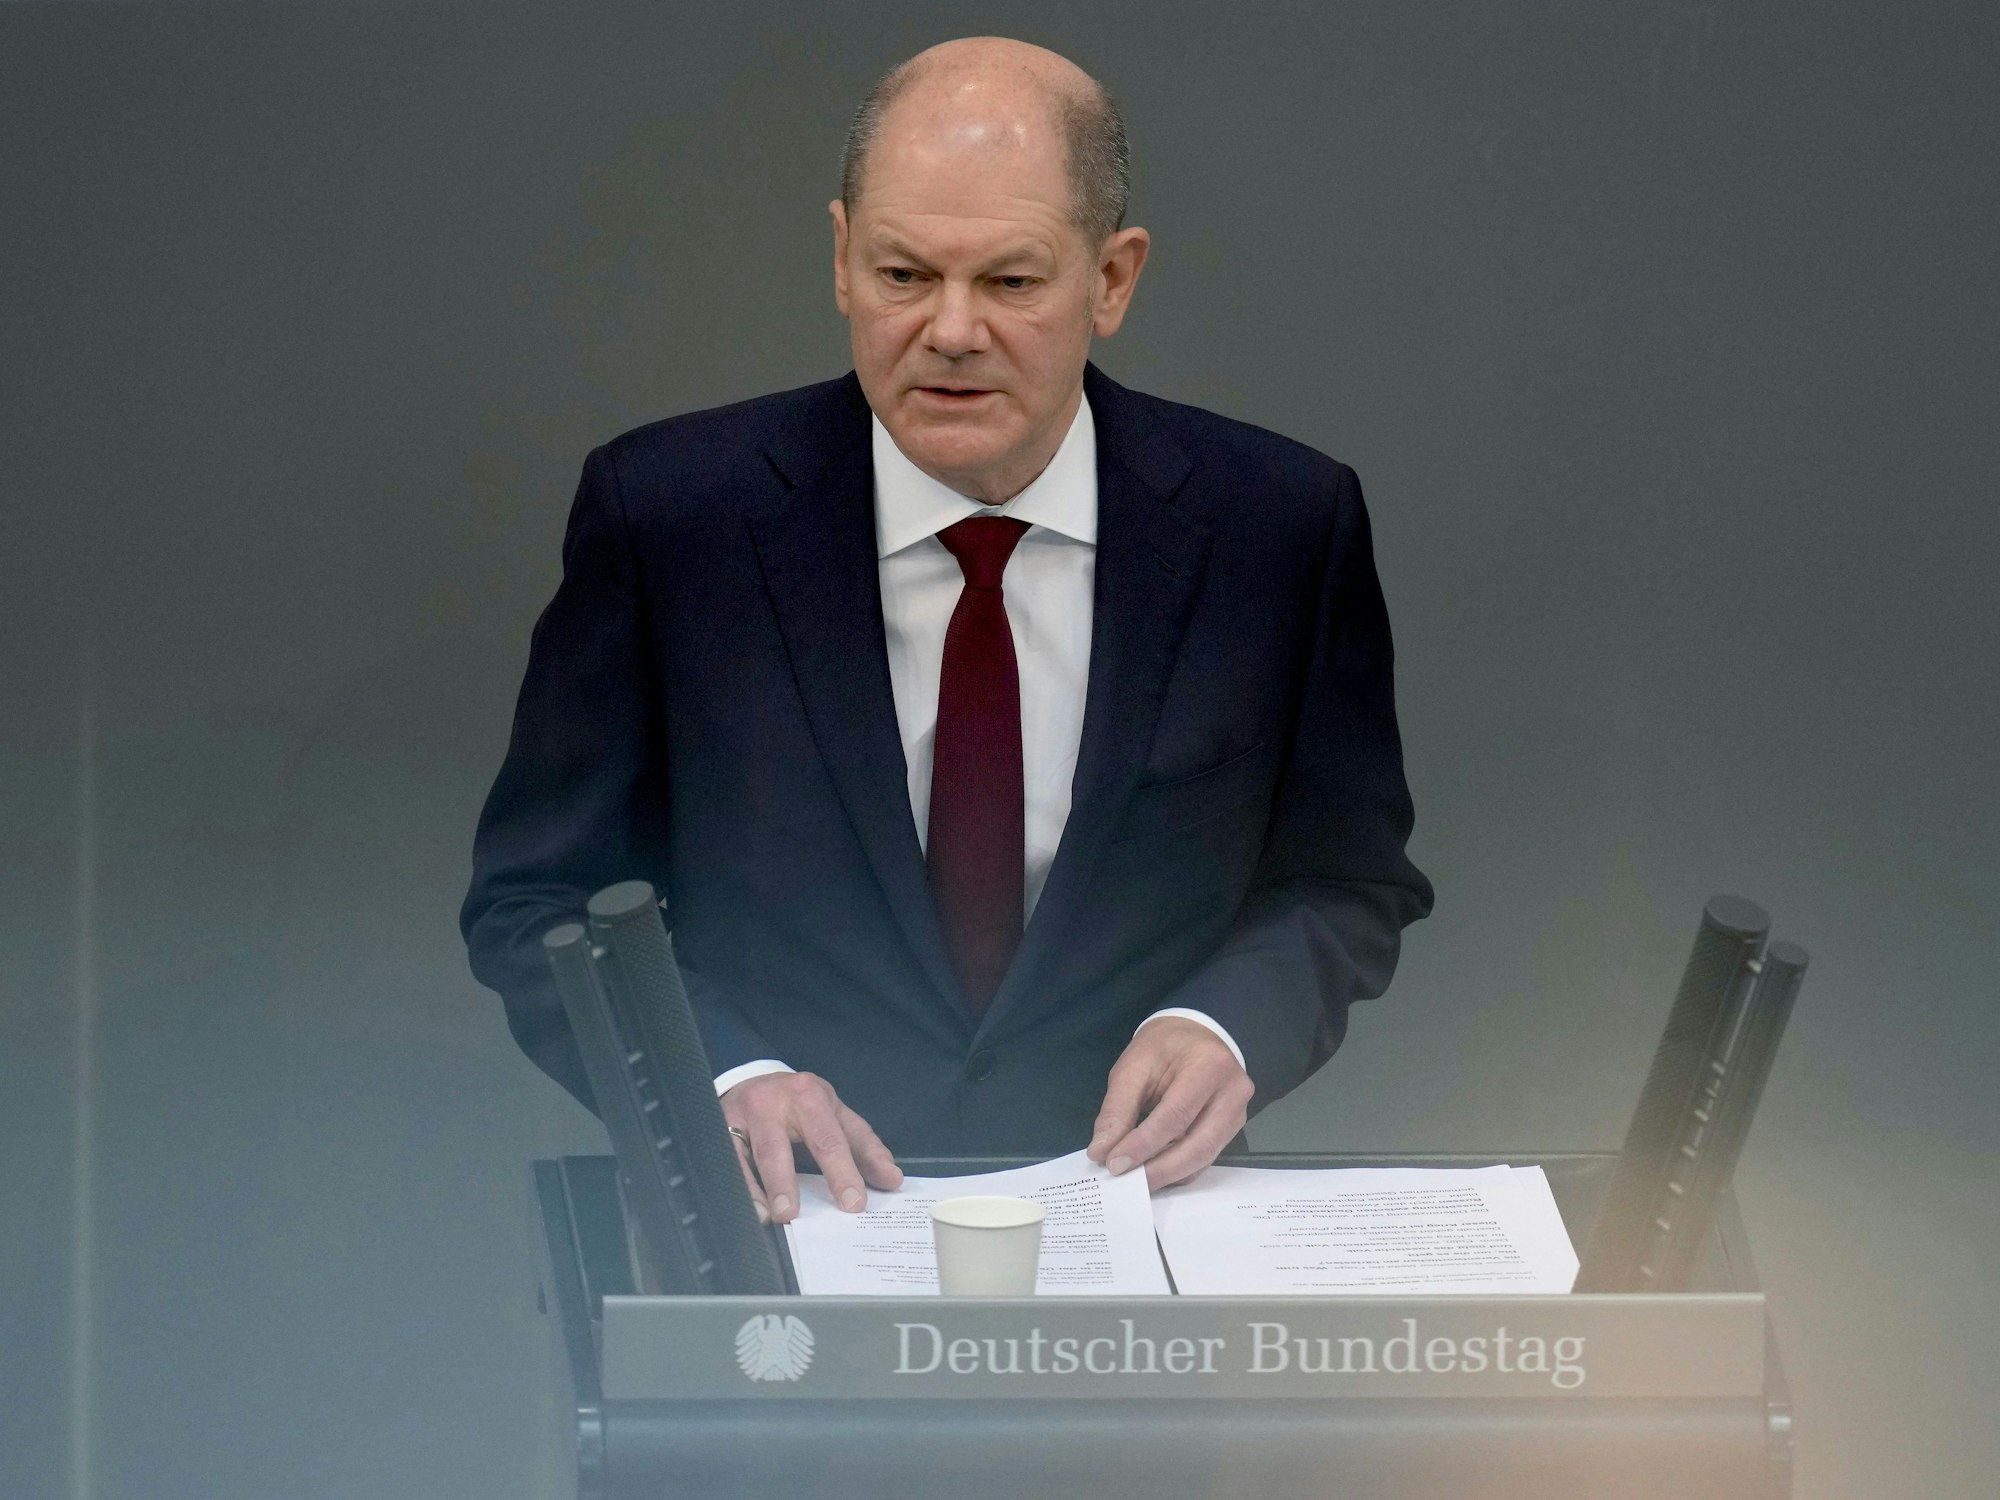 Der Bundeskanzler Olaf Scholz bei seiner Rede im Reichstag.